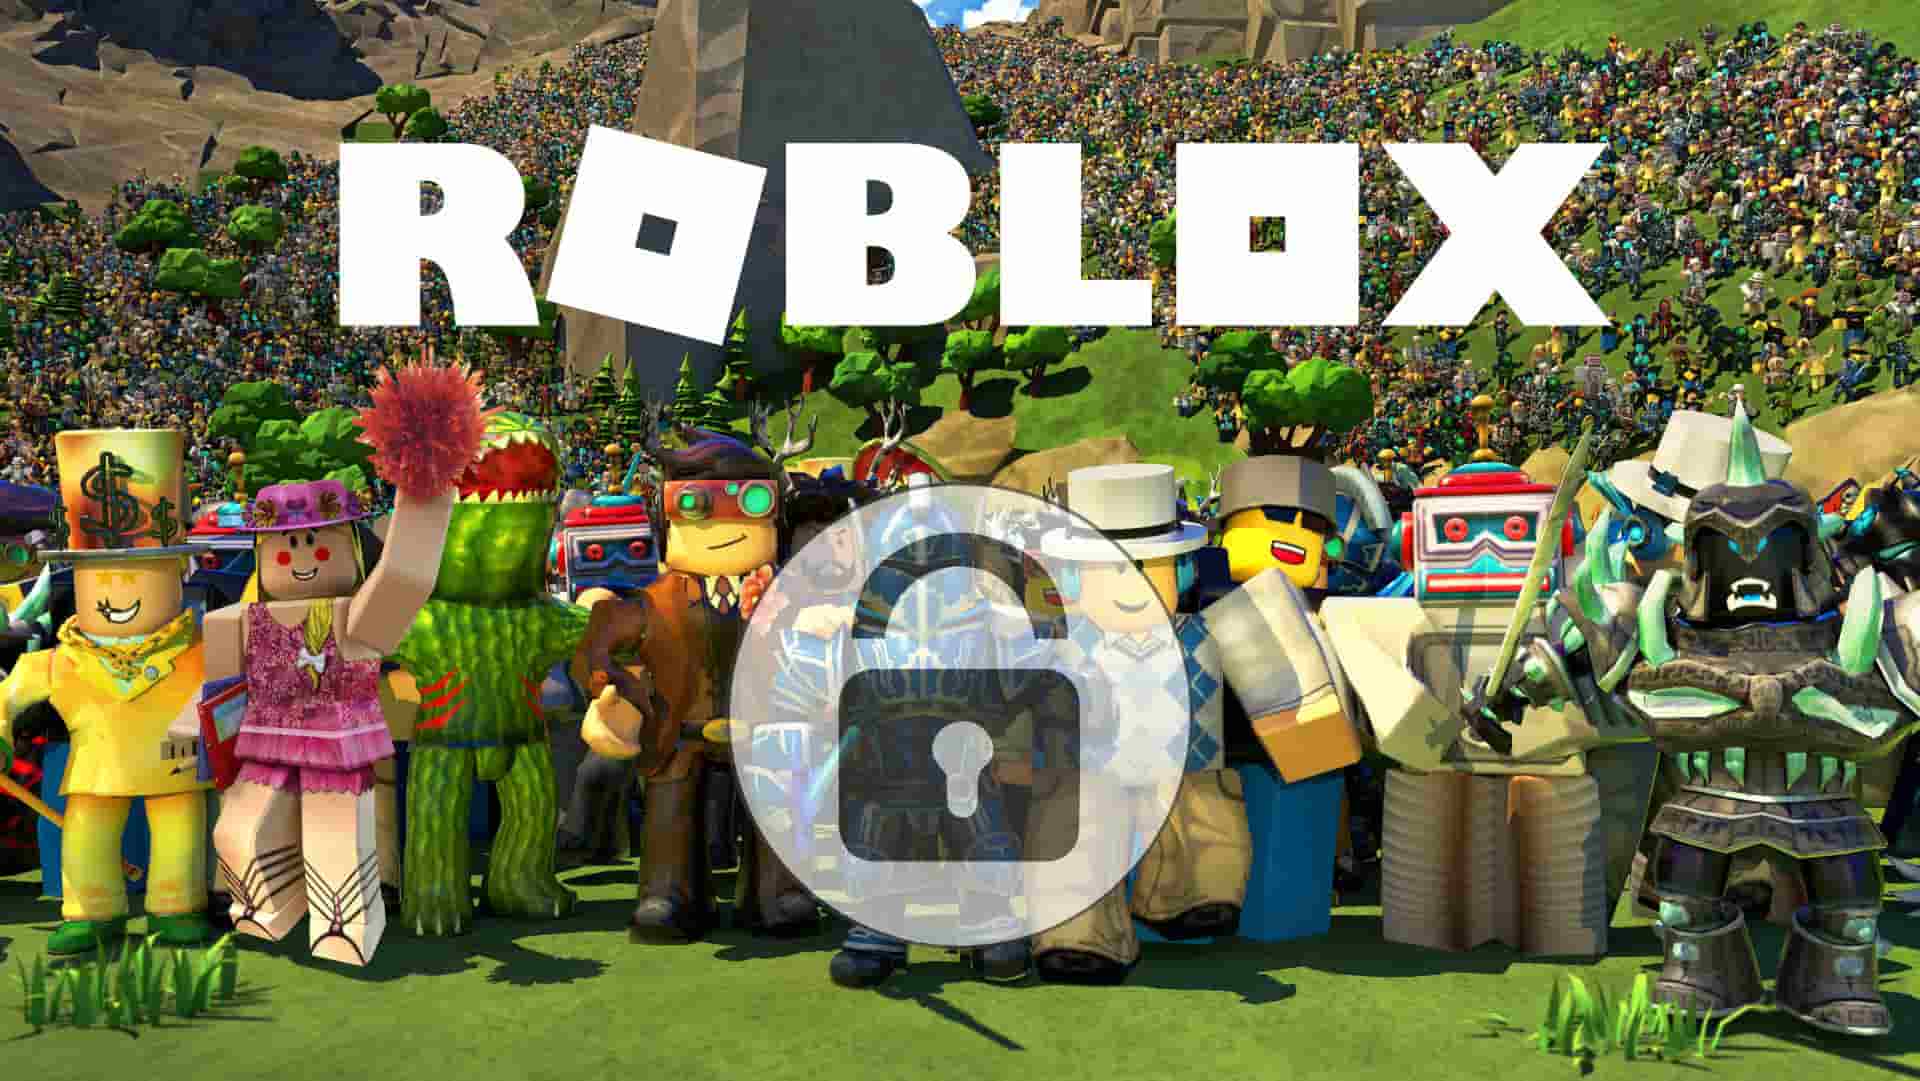 Roblox é acusada de ser uma plataforma insegura para crianças